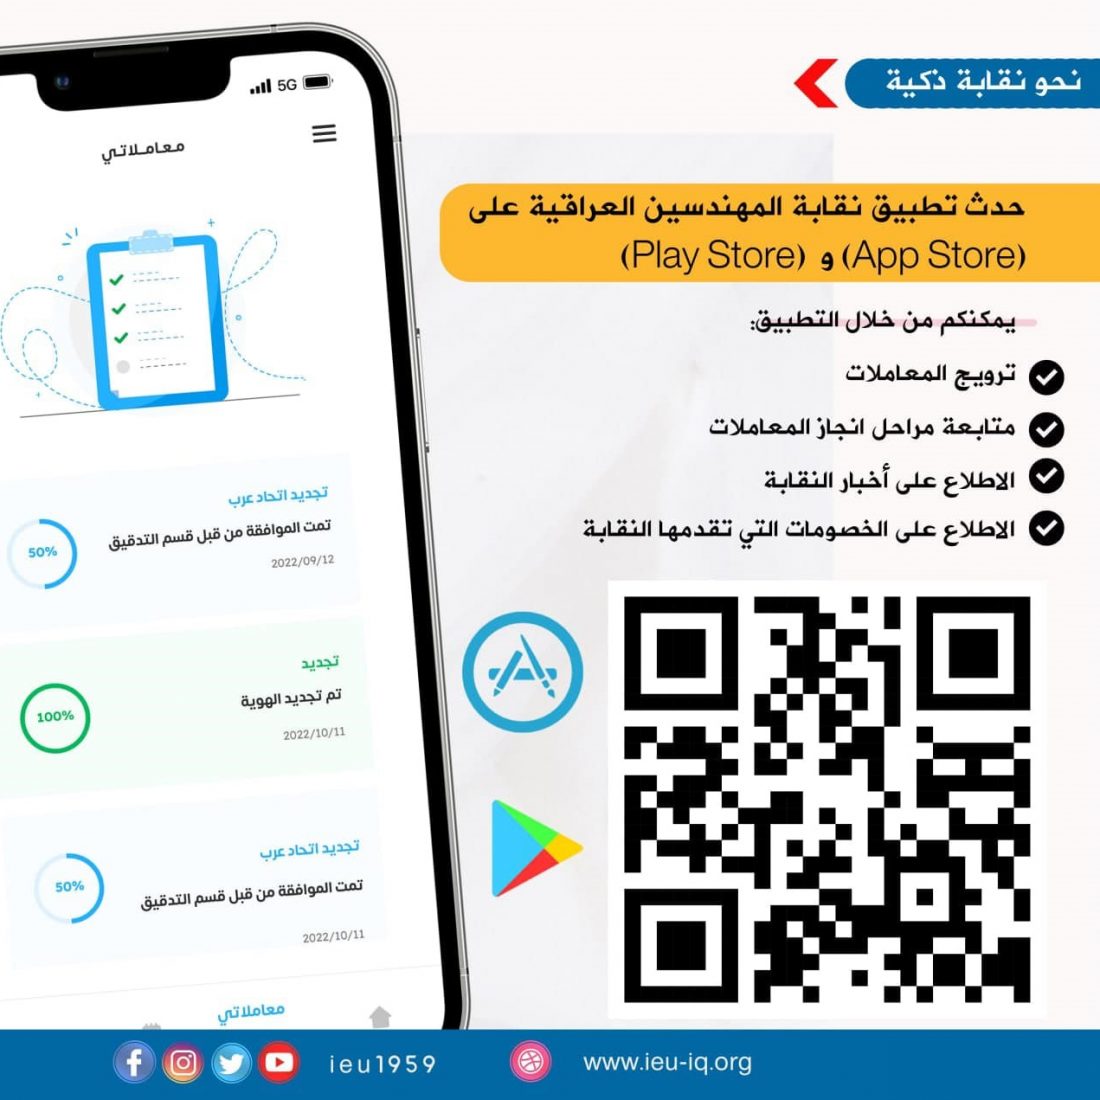 حدث تطبيق نقابة المهندسين العراقية على (Play Store) و(App Store) للاستفادة من خدماته